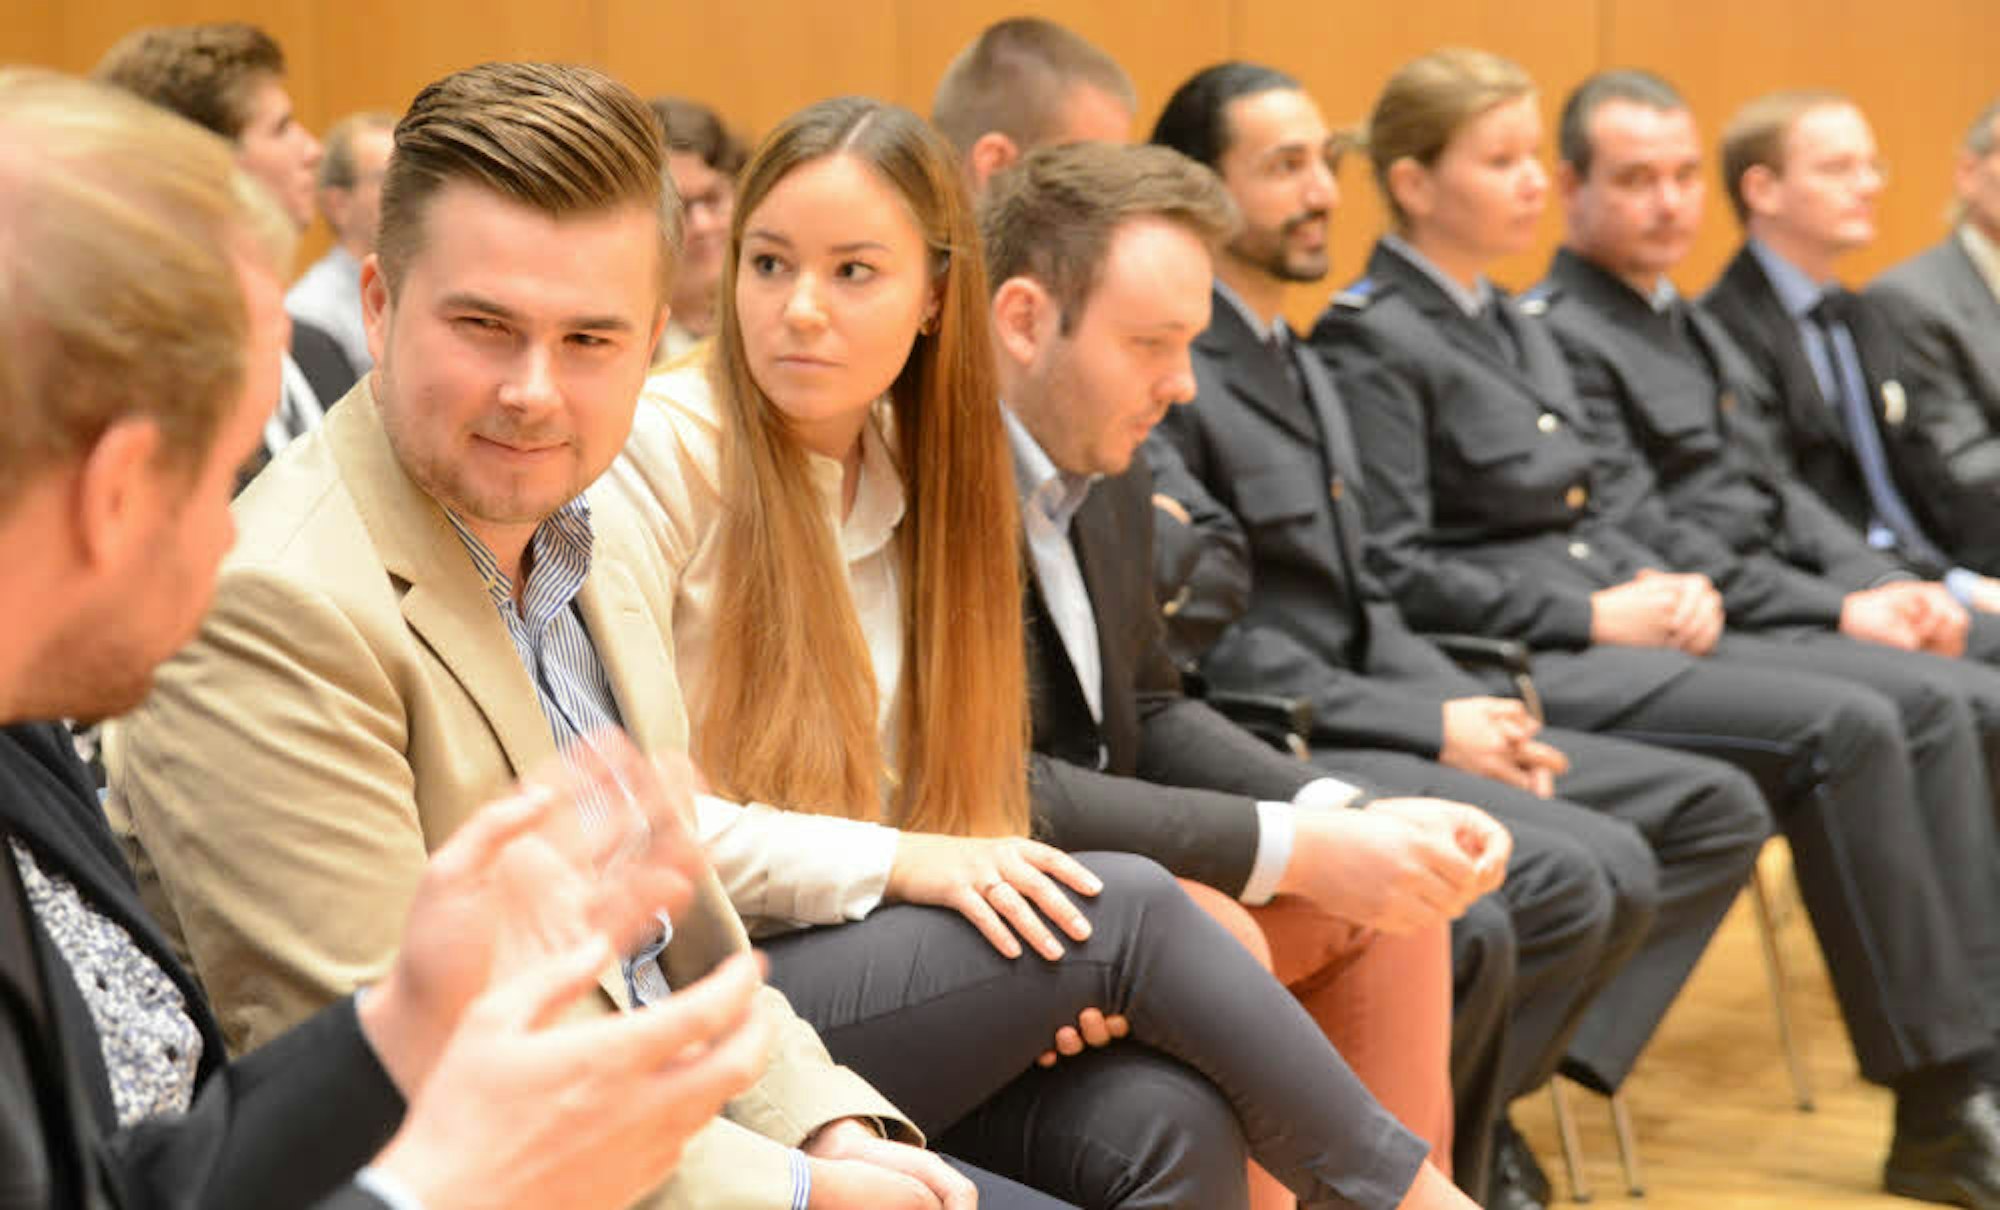 Die jungen Diskussionsteilnehmer und übrigen Studierenden füllten gemeinsam mit den geladenen Gästen die Ränge im Audimax der Hochschule des Bundes im Brühler Westen.